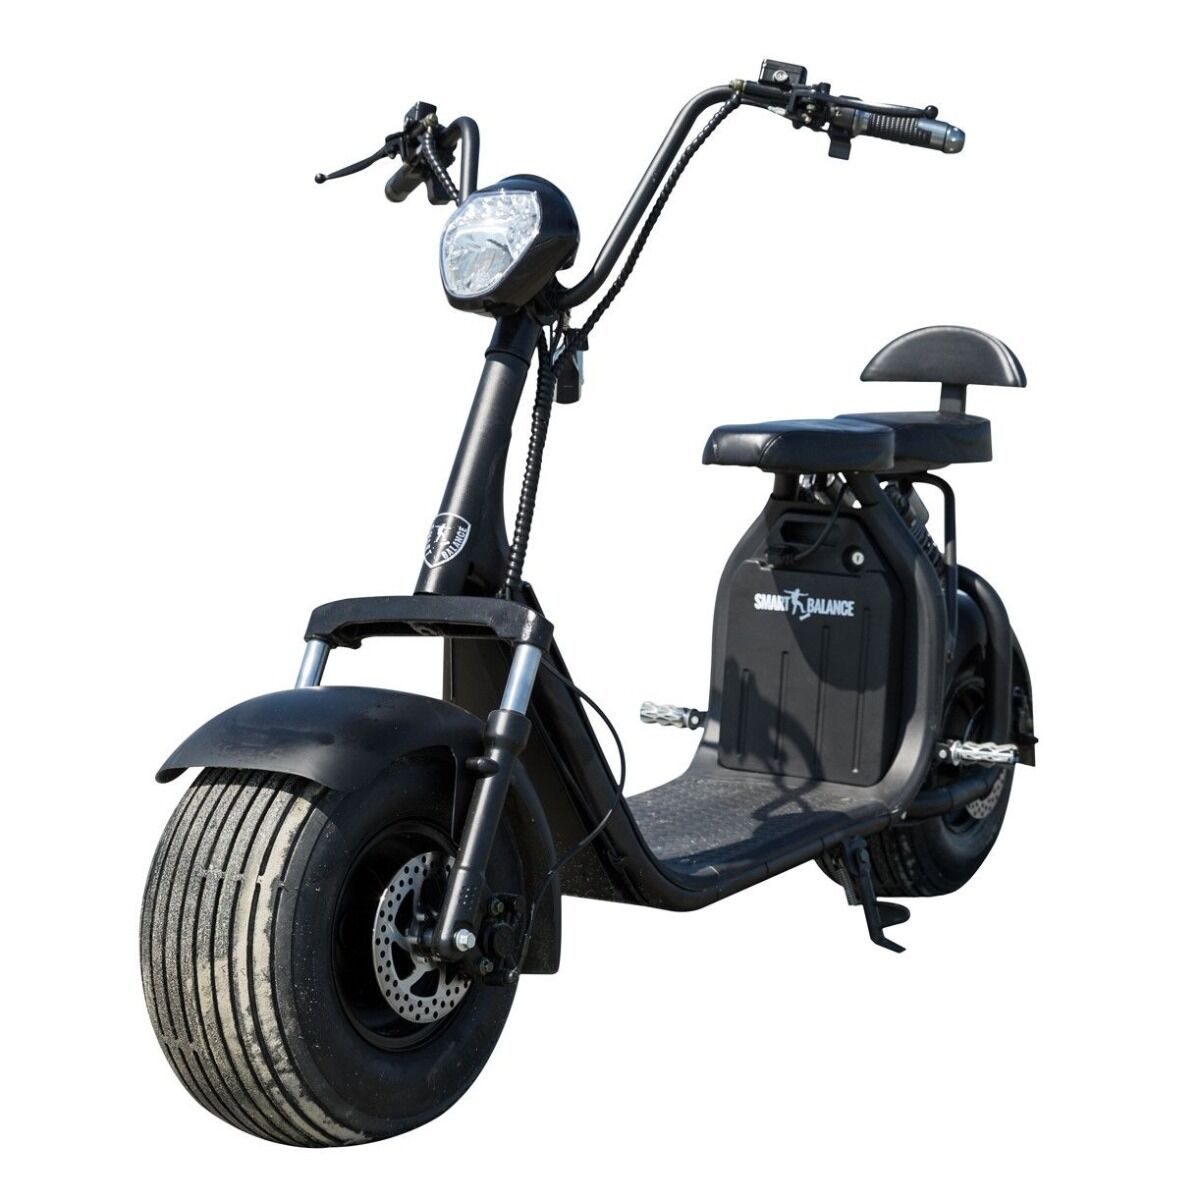 Moped SB50 Smart Balance, motor 1000 W, viteza 25 km/h, autonomie 60 km, Negru